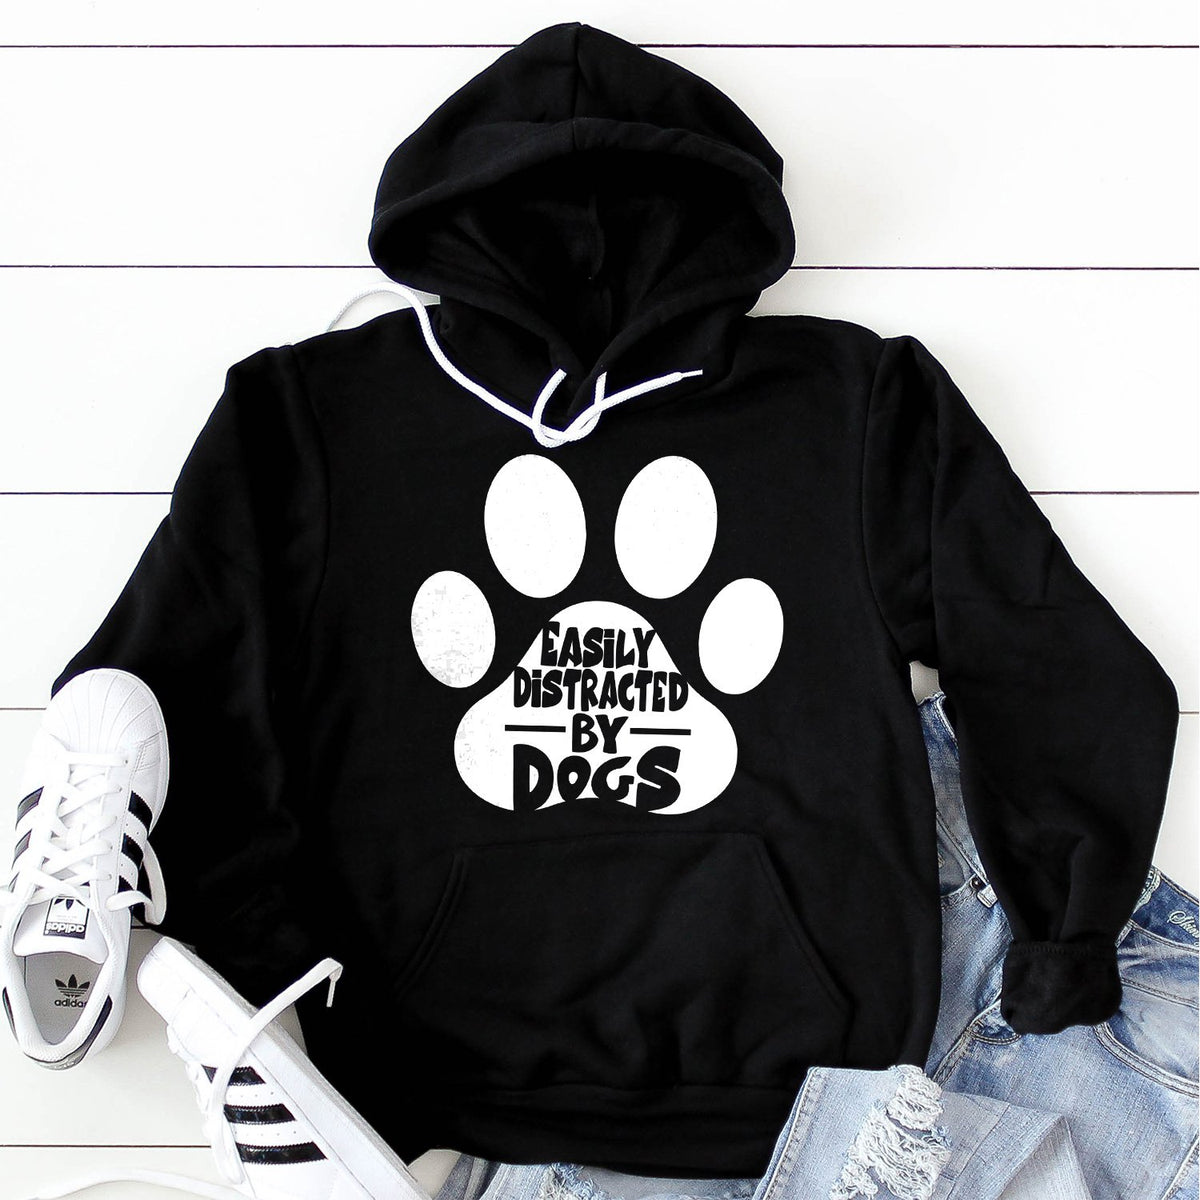 Easily Distracted By Dogs - Hoodie Sweatshirt